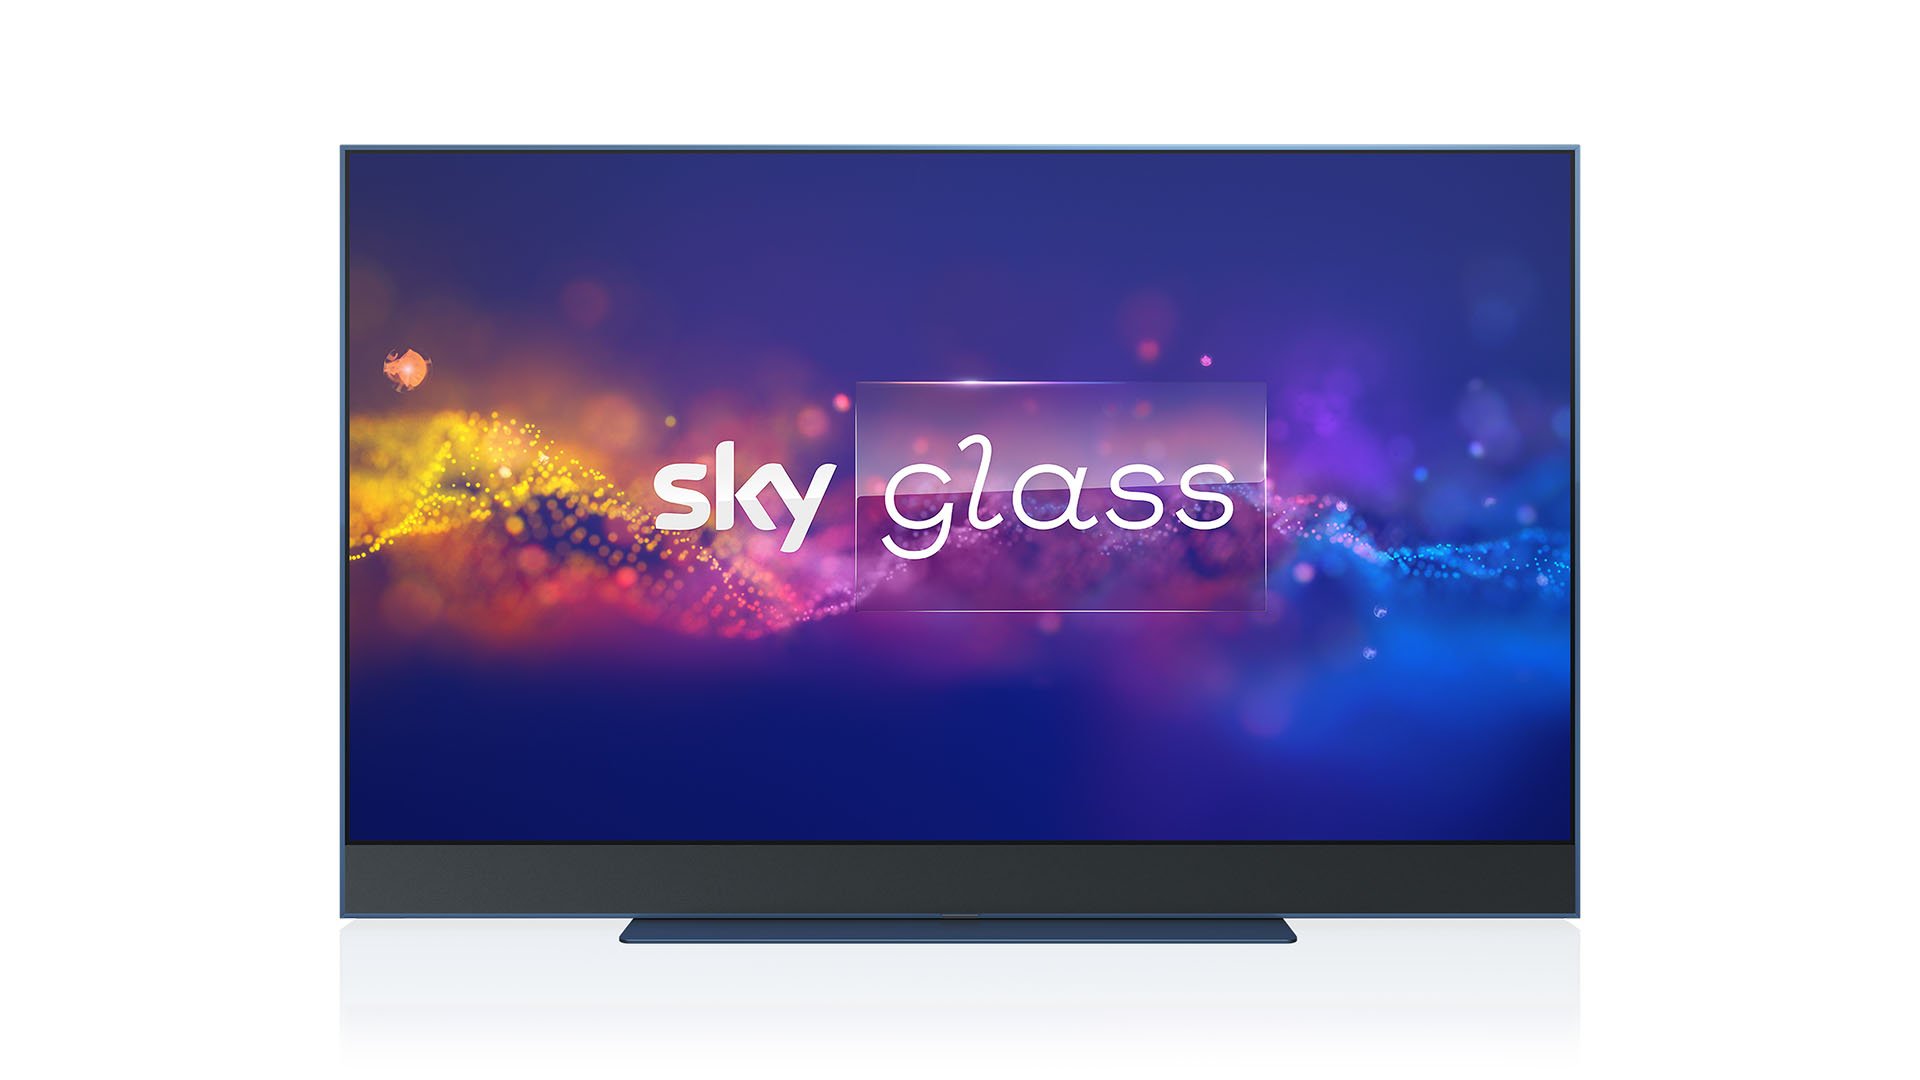 Sky Glass. Image: Sky.